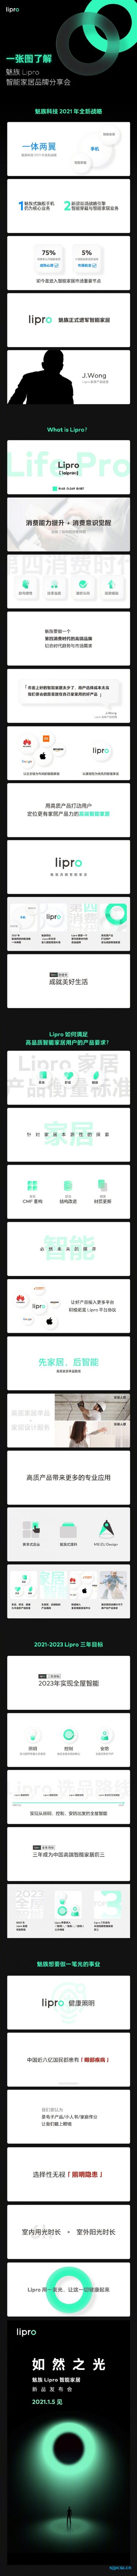 魅族公布智能家居品牌 “Lipro" ：黄章亲自担任首席产品经理